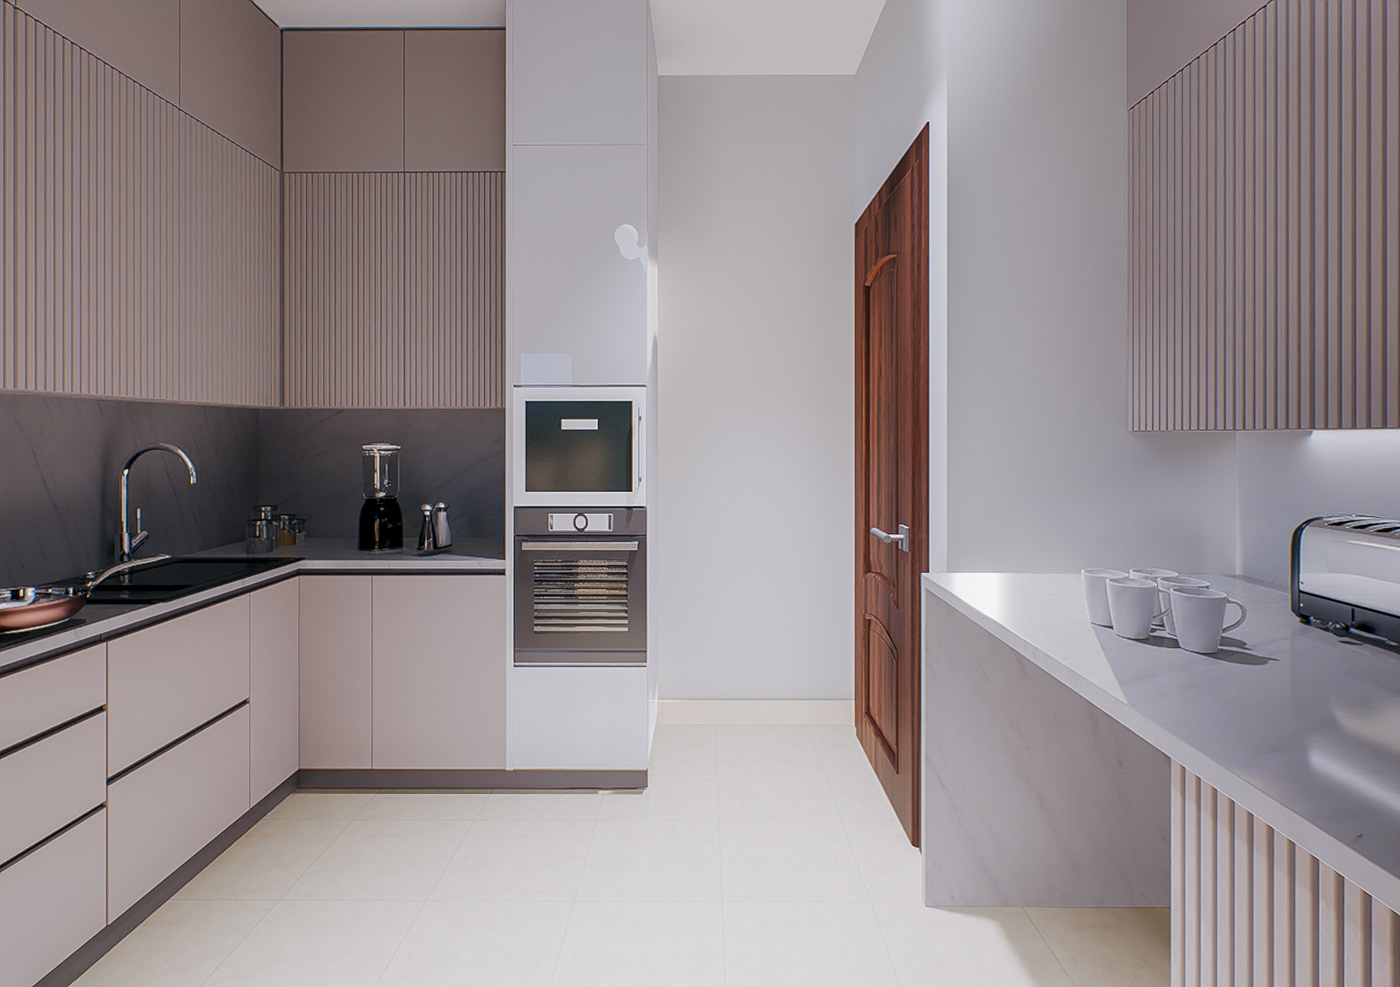 Kitchen Appliance kitchen visualization Render interior design  3ds max modern chandelier wood units